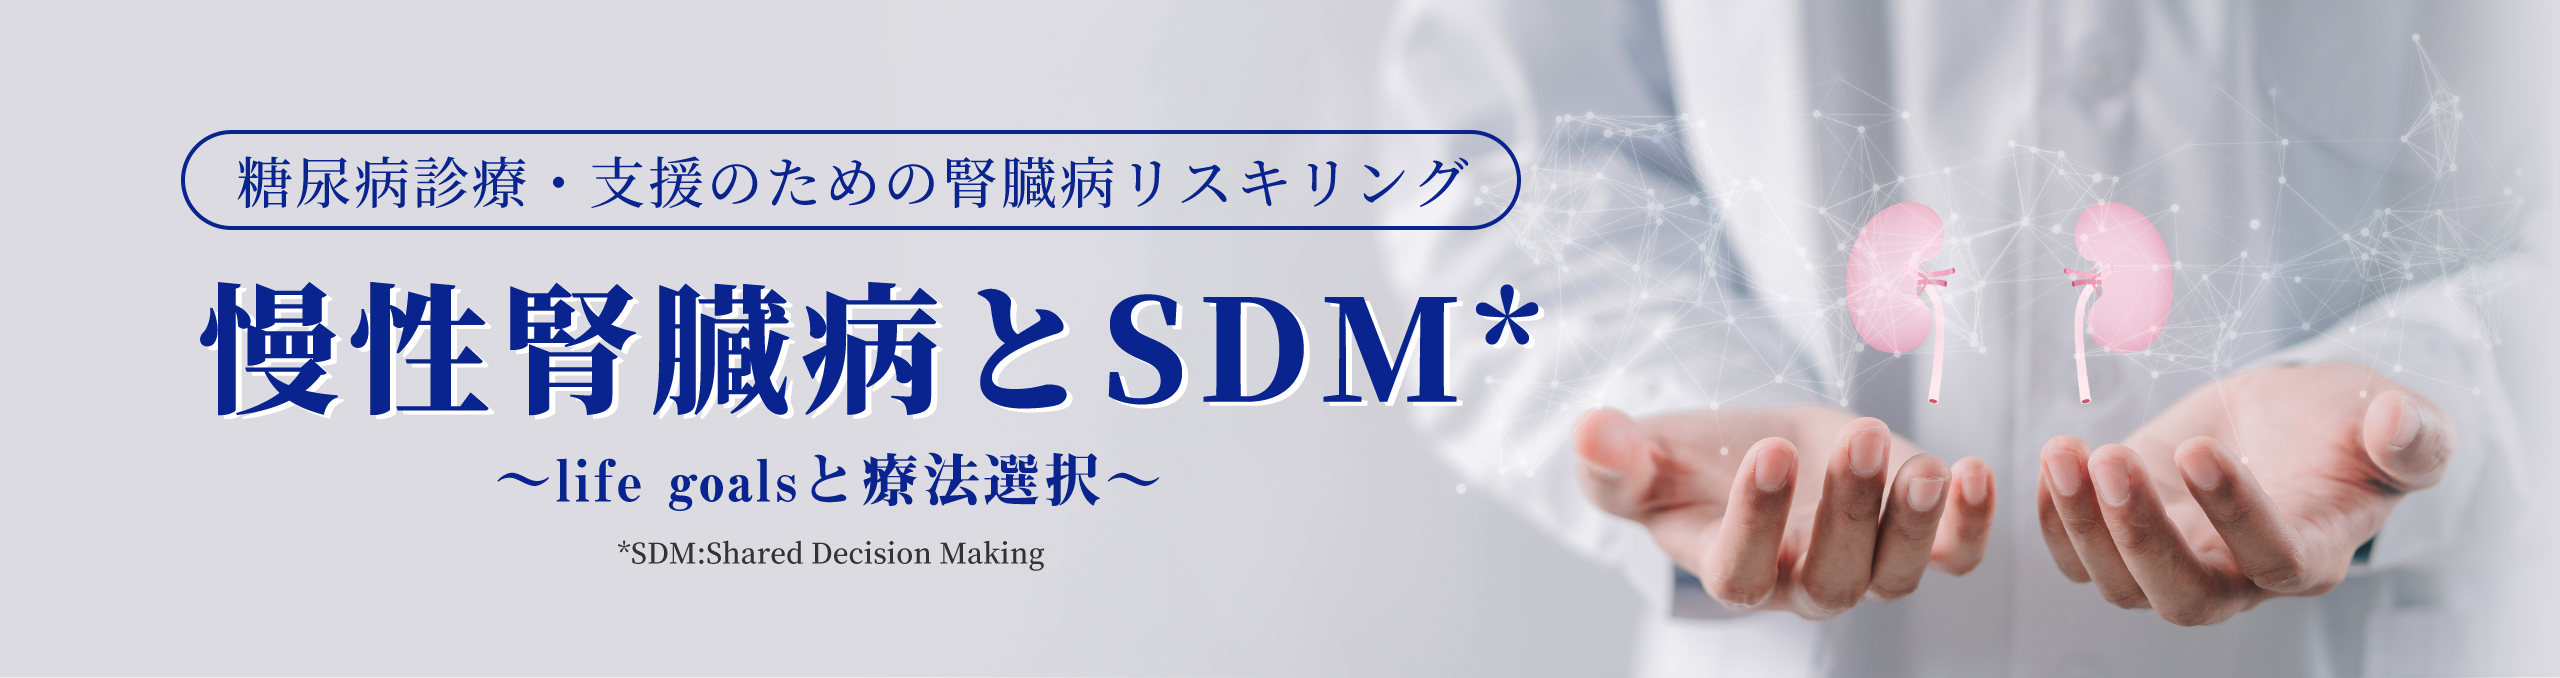 糖尿病診療・支援のための腎臓病リスキリング 慢性腎臓病と SDM*